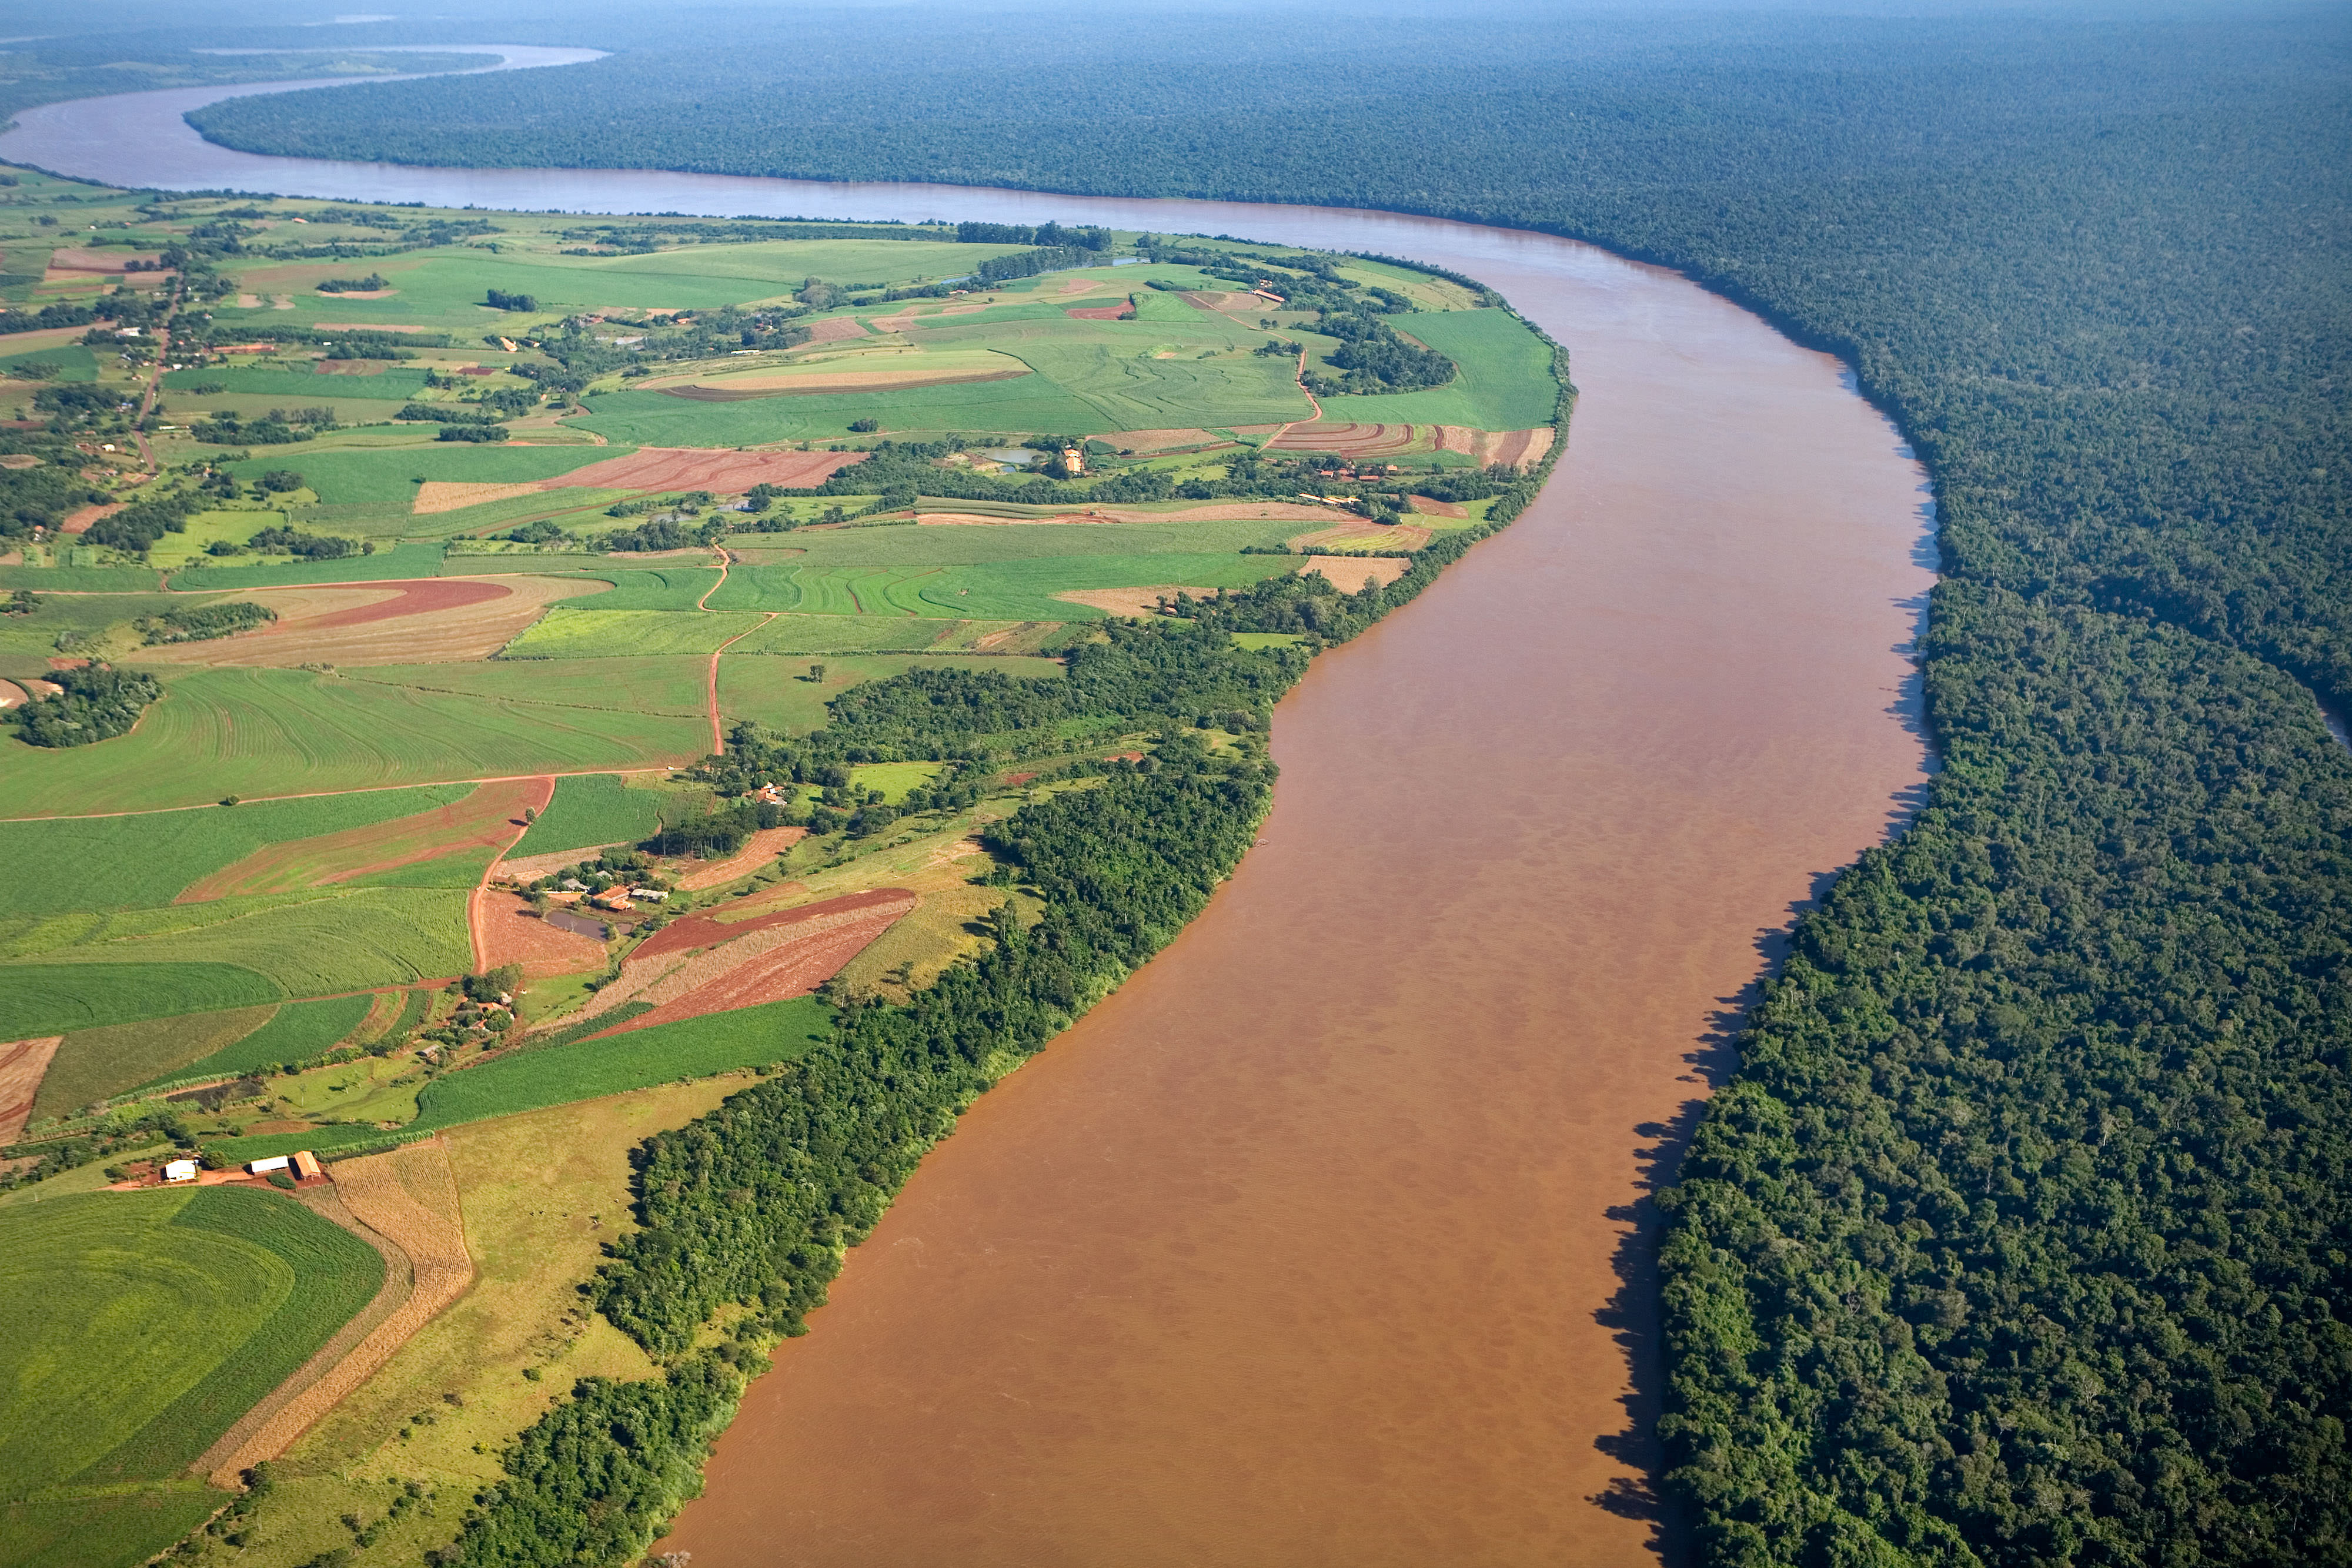 Aerial view of the Iguaçu River